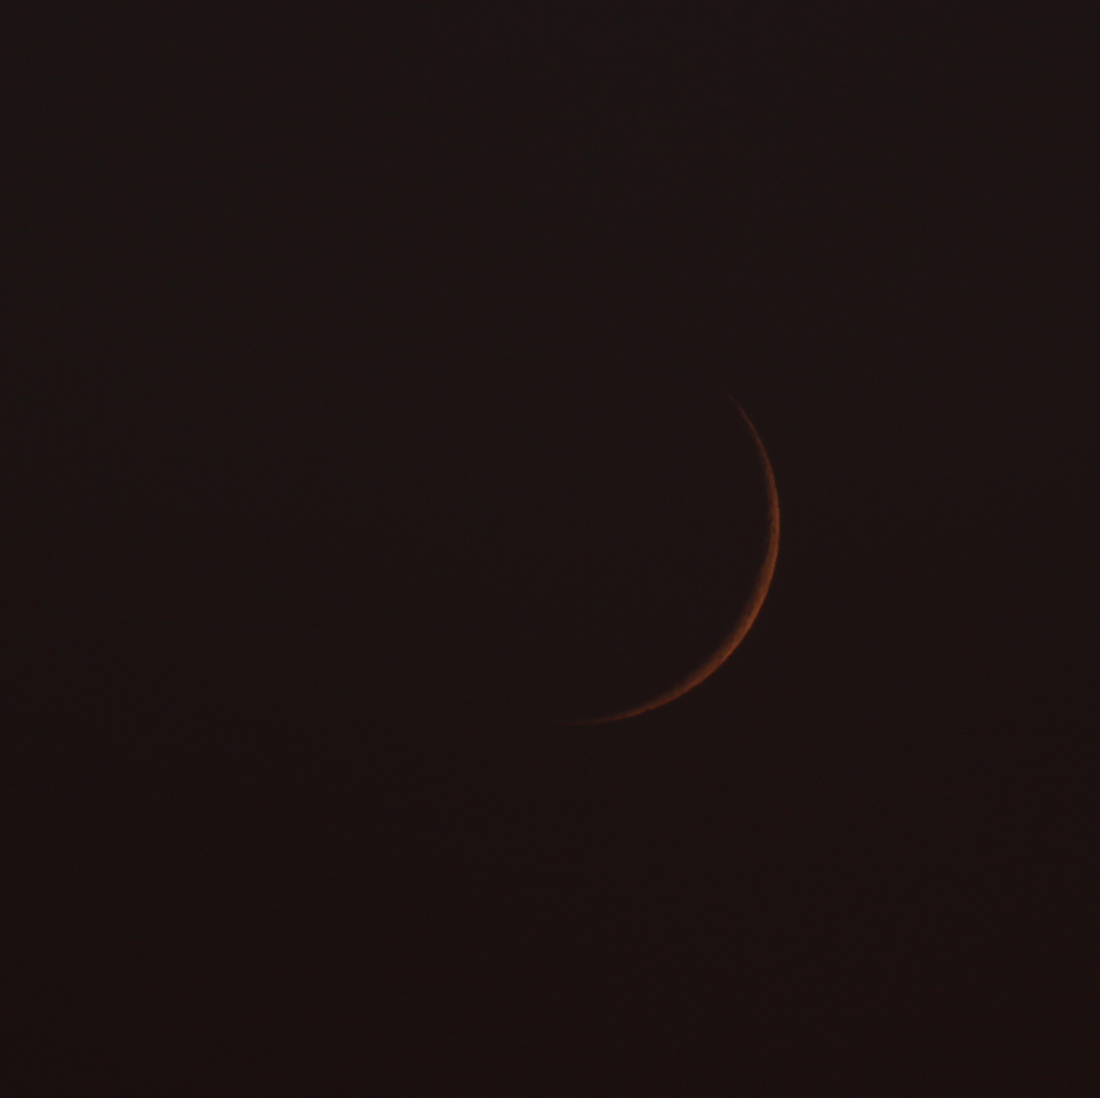 le croissant de lune au soir du 14/07/2018 (45960.JPG)